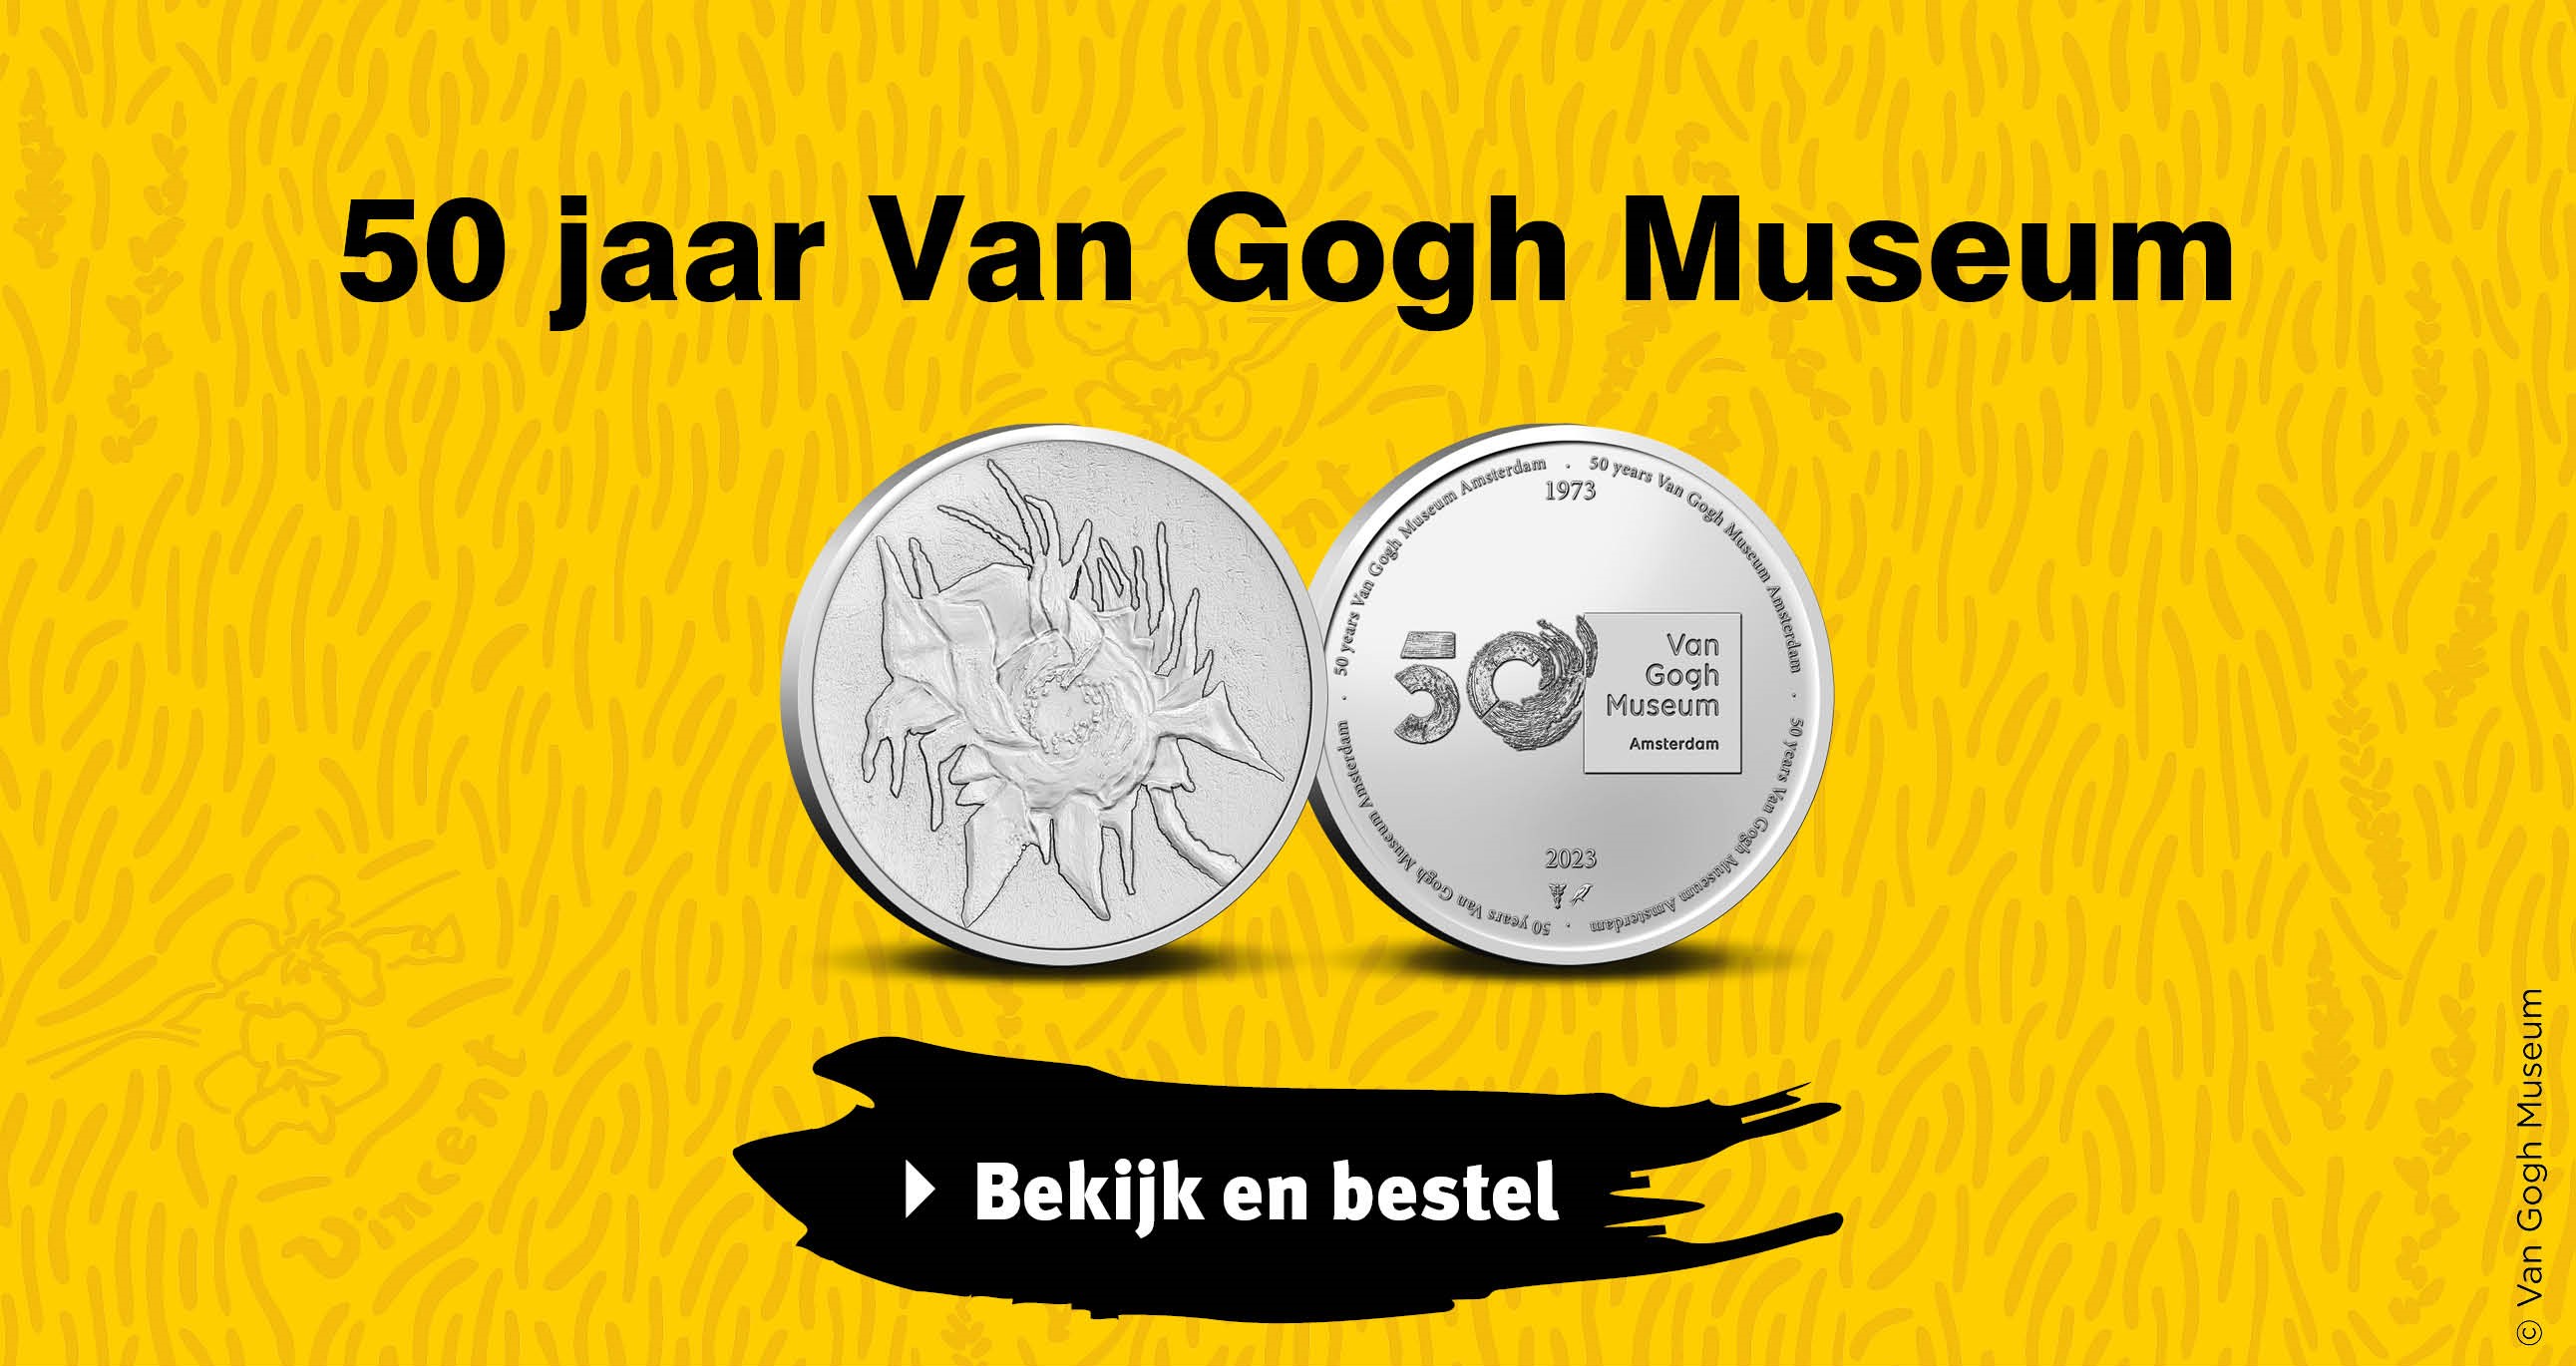 Bekijk en bestel: 50 jaar Van Gogh Museum in coincard